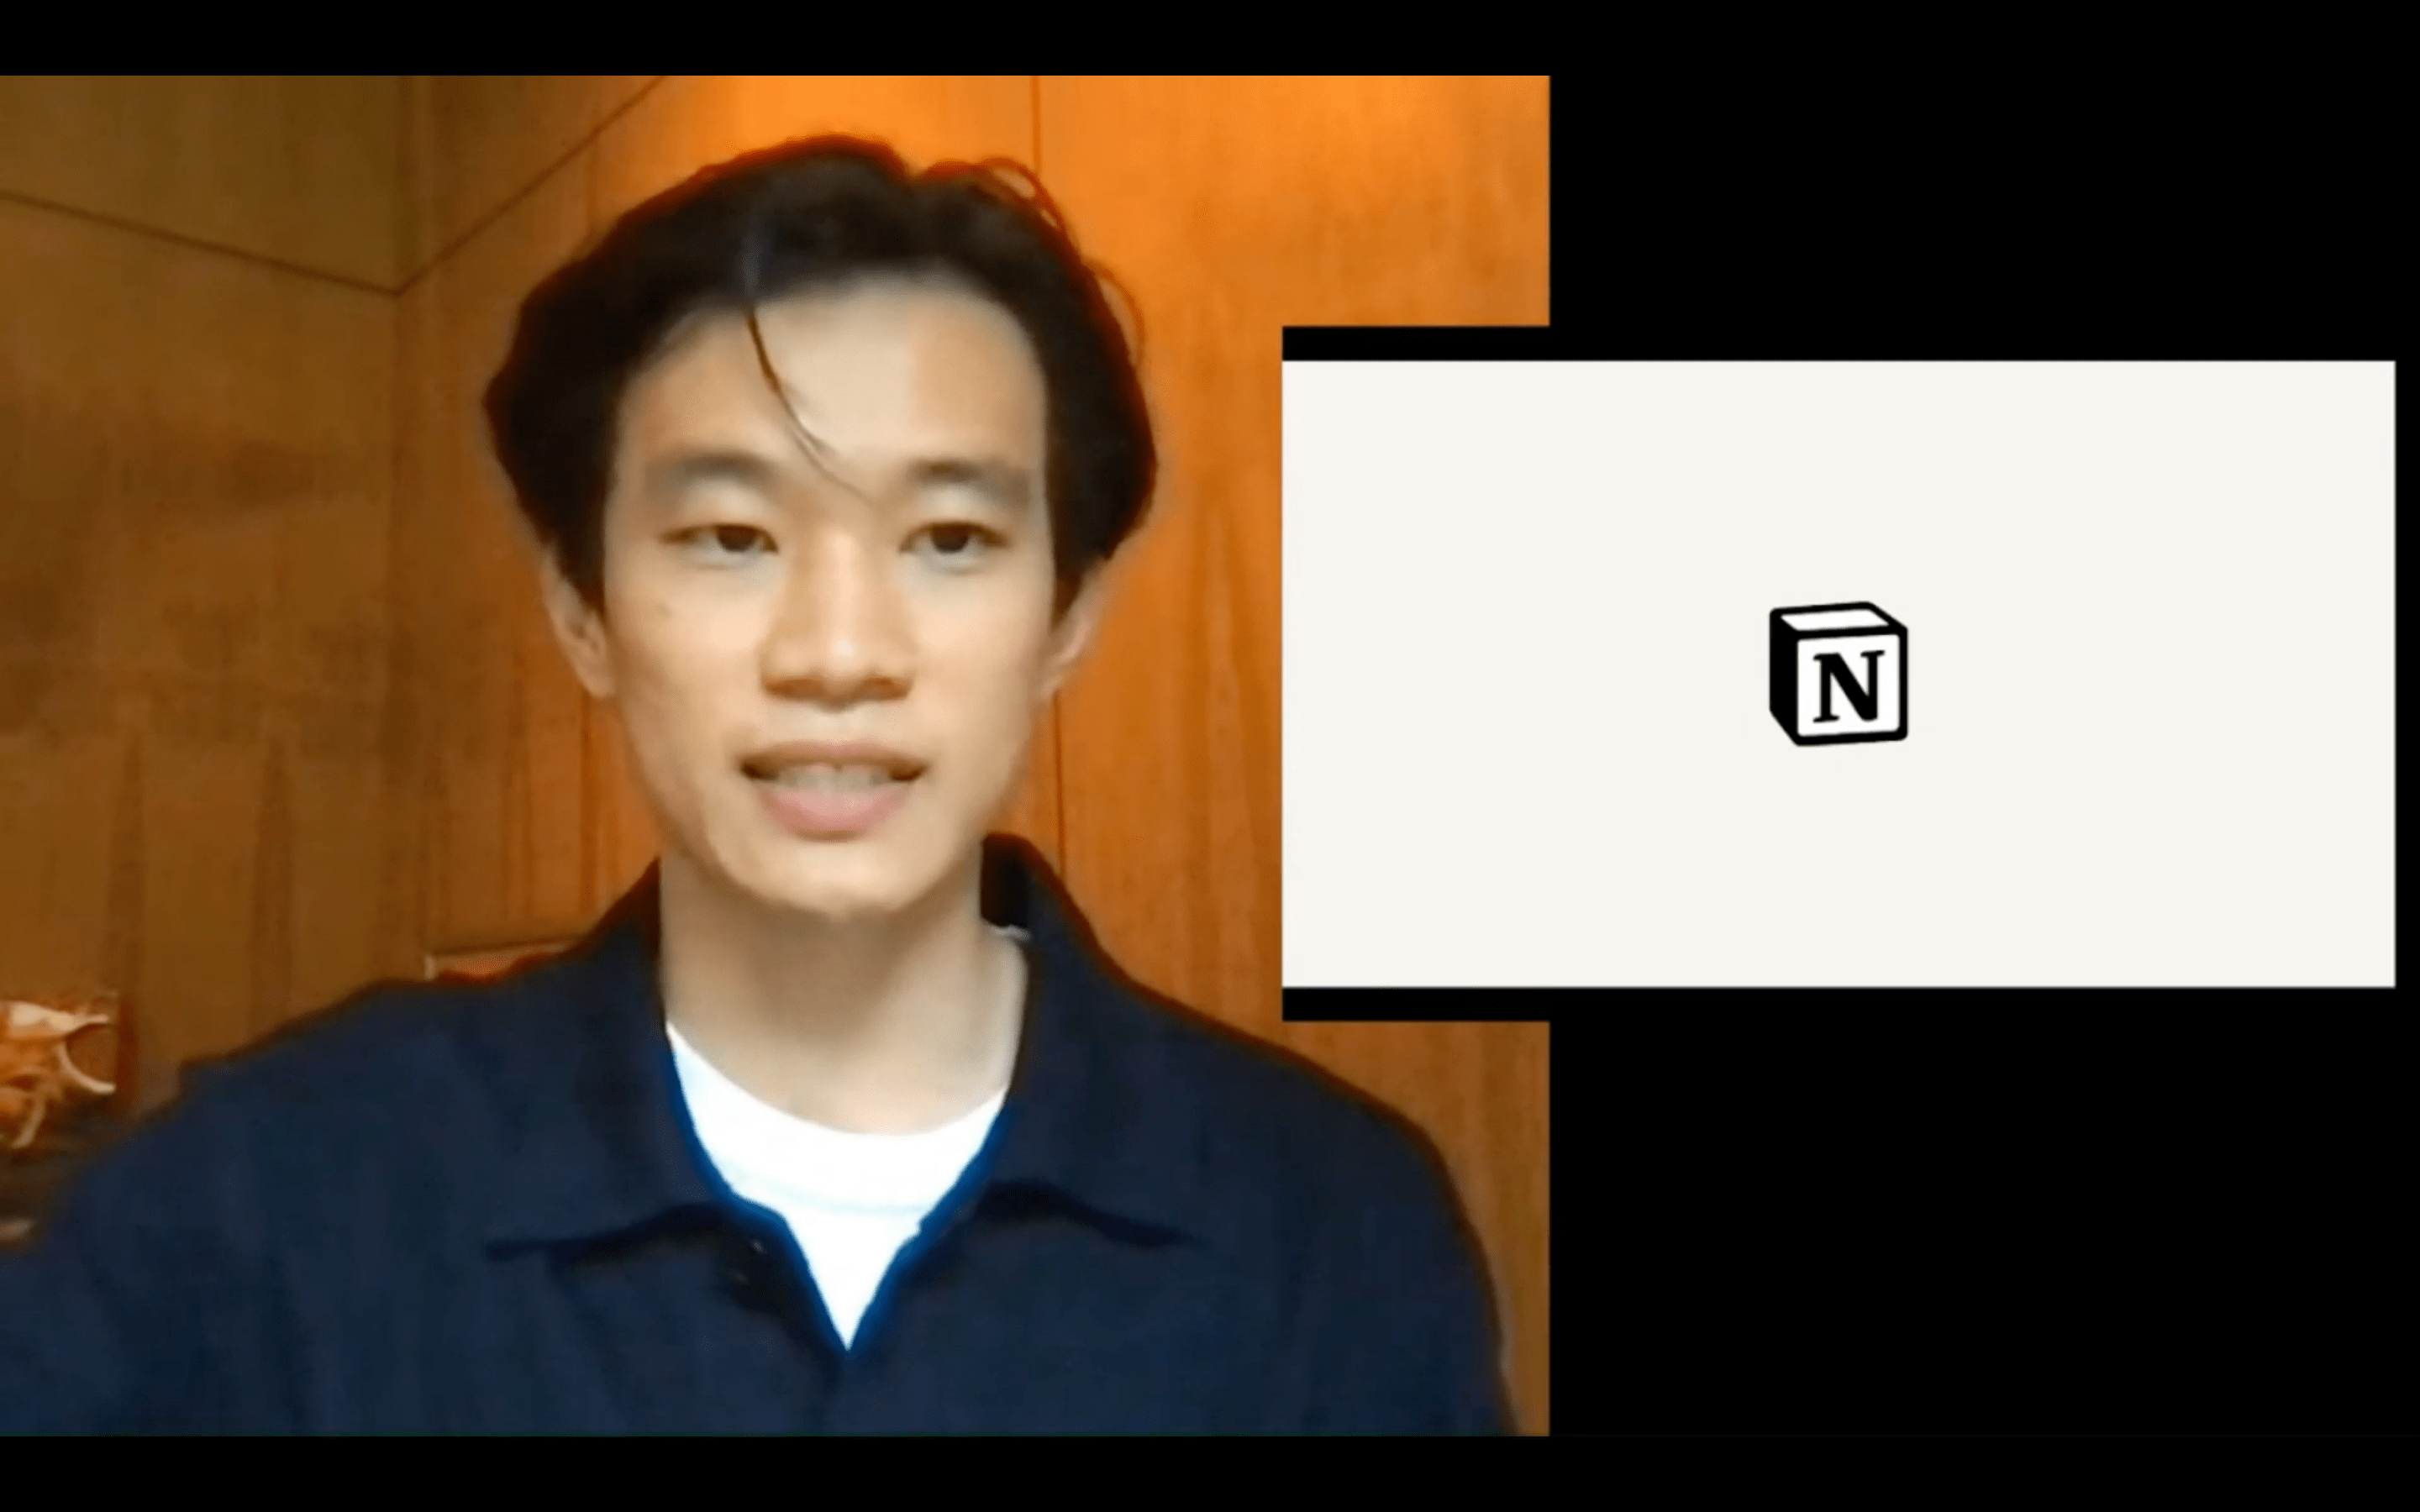 Notion Labsの創業者でCEOのIvan Zhao氏。画像は6月に自社イベント「Block x Block」で登壇した際のスクリーンショット